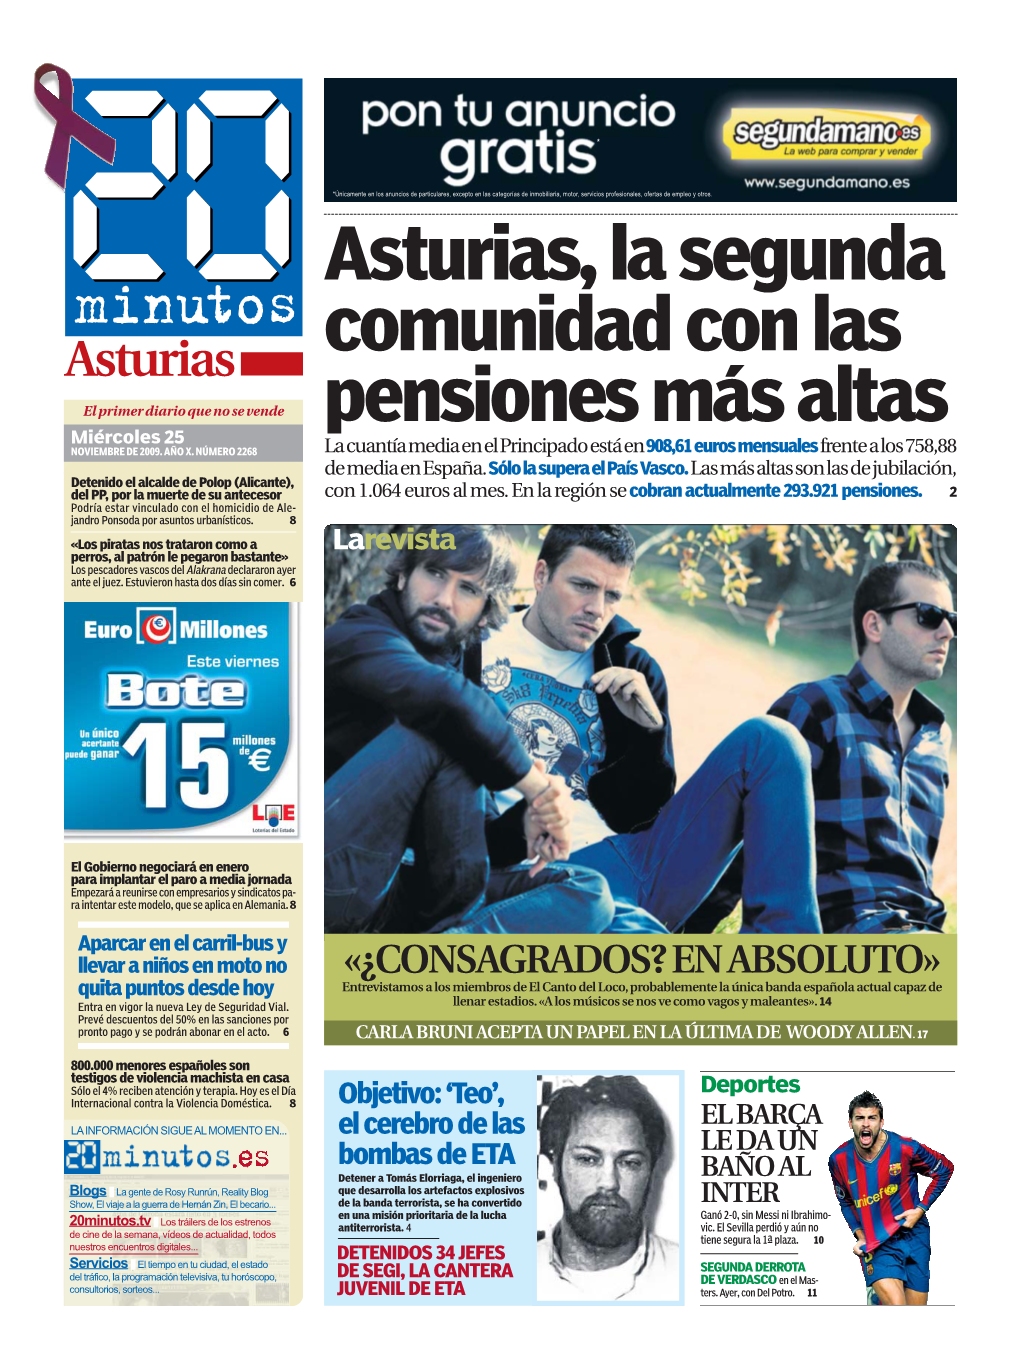 Asturias, La Segunda Comunidad Con Las Pensiones Más Altas